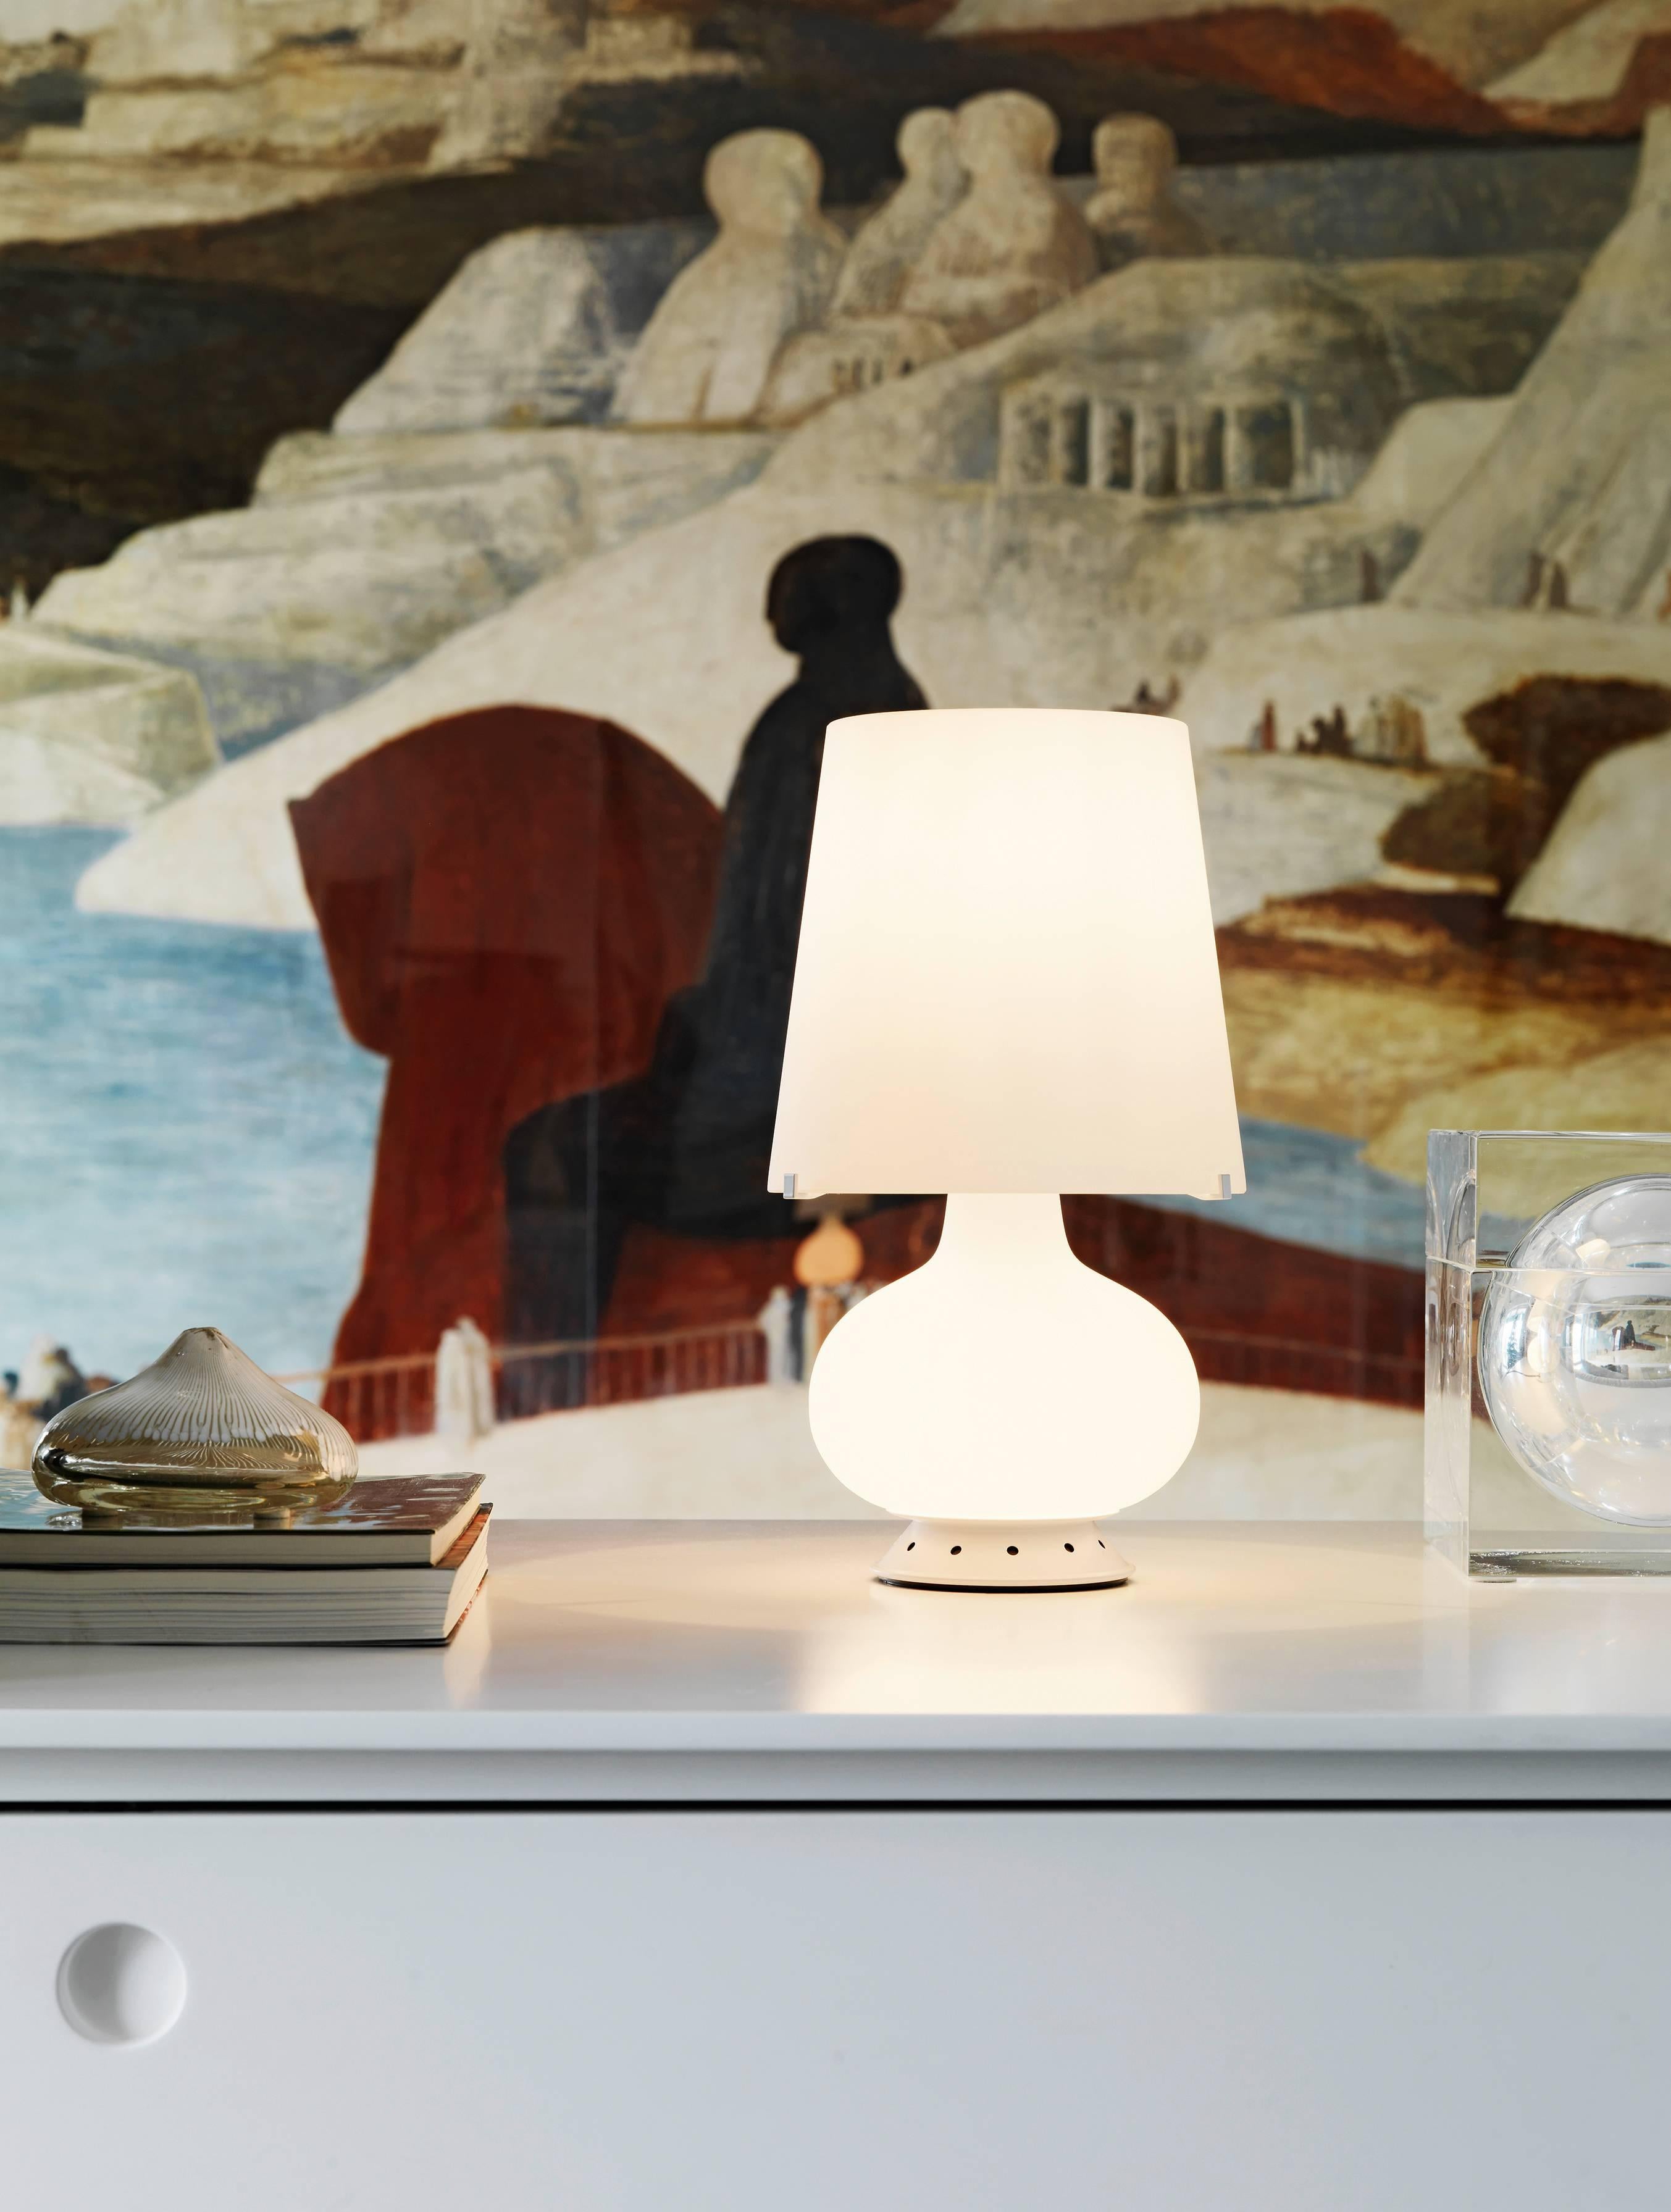 Eine immergrüne, zeitlose Designikone, der Lampenschirm schlechthin.
Diese fabelhafte Lampe aus weißem mundgeblasenem Glas ist ein Beispiel für die Kunst der Glasbläsermeister und eine Hommage an das kreative Genie von Max Ingrand.

Tischleuchte